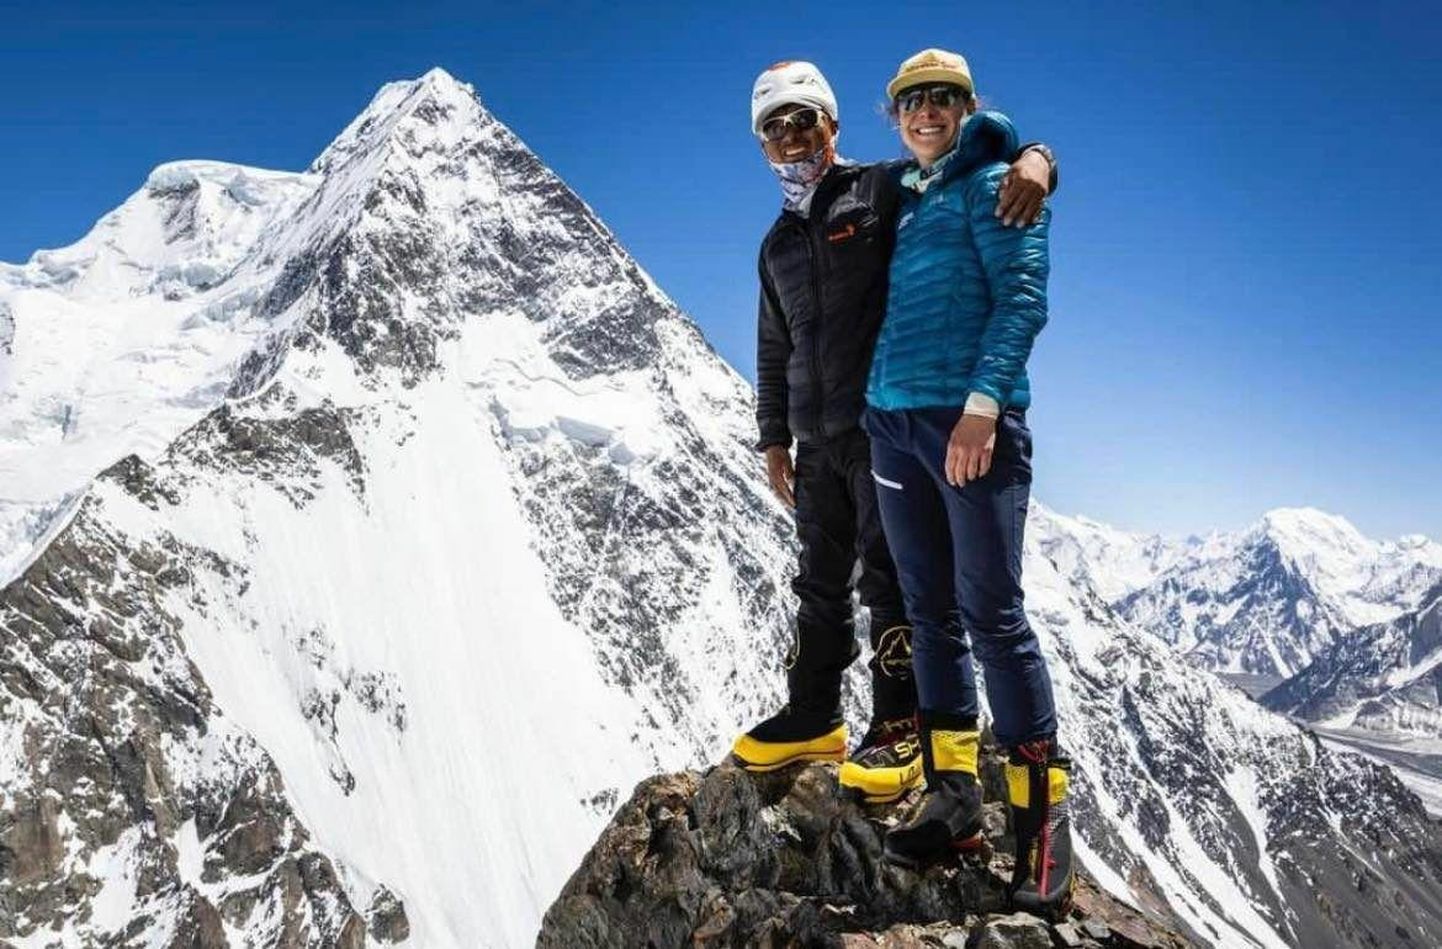 Esimese Eesti naisena Mount Everestil käinud Krisli Melesk (paremal) koos šerpa Aang Phurbaga K2 taustal.